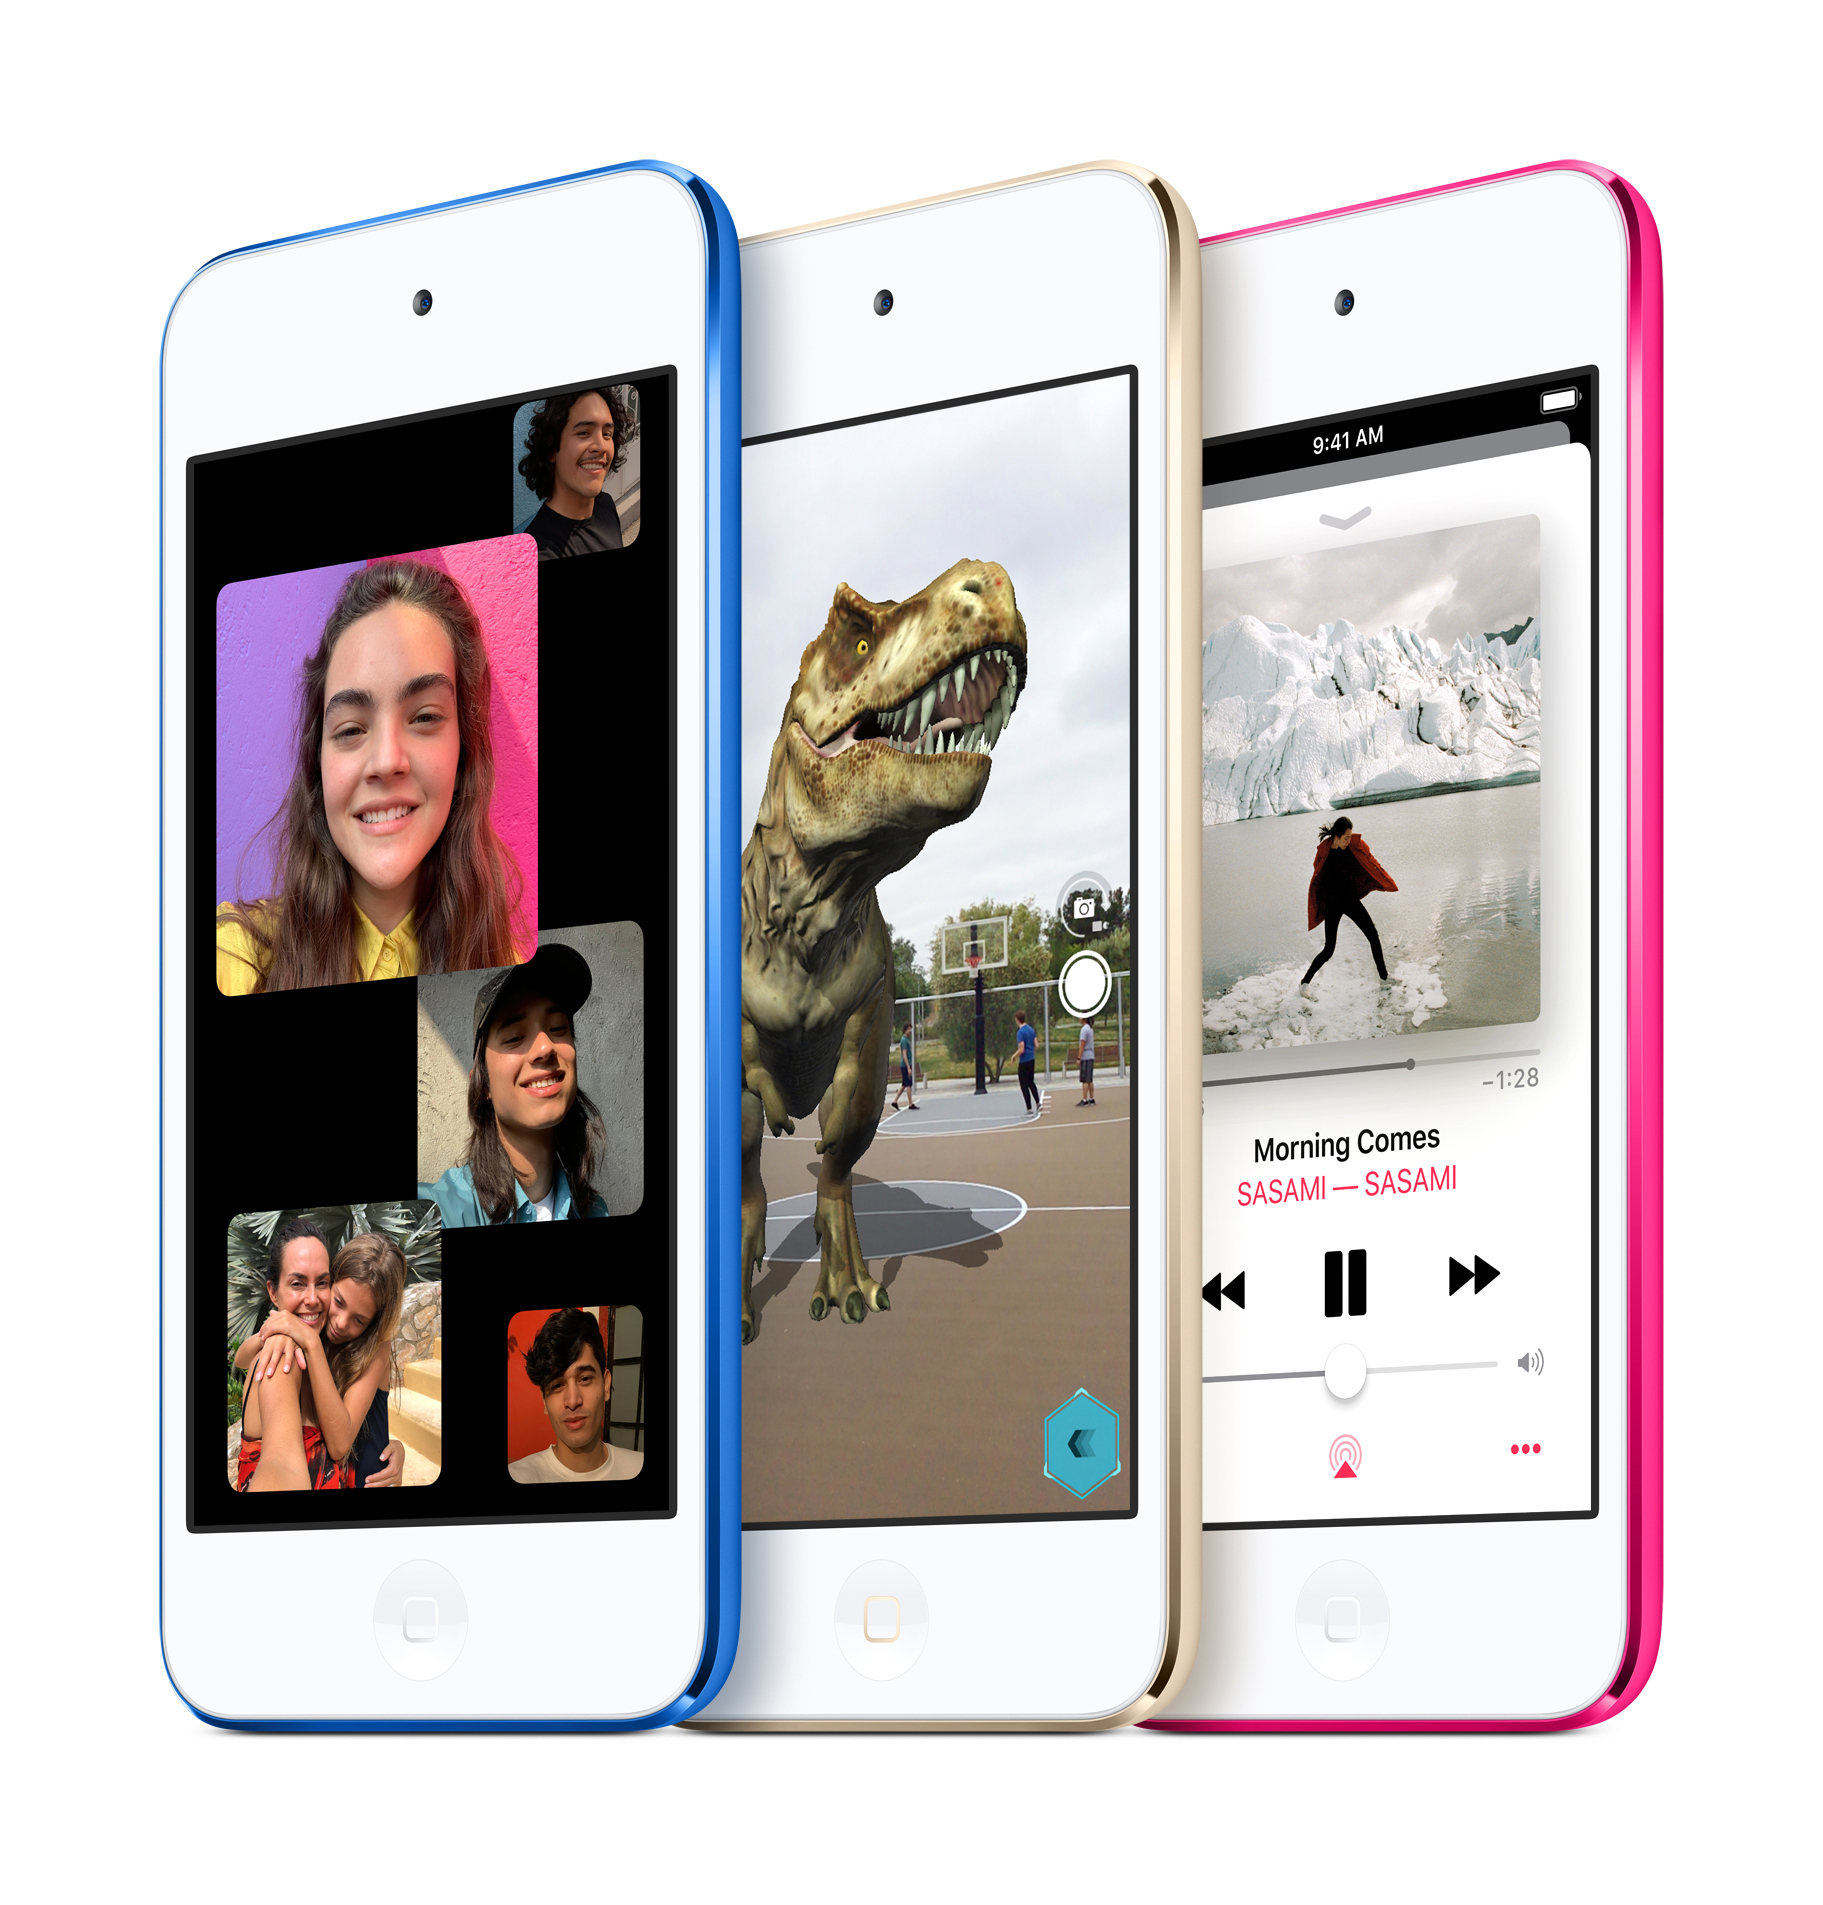 El iPod touch se lanzó en 2019 (CREDIT: Apple) 

